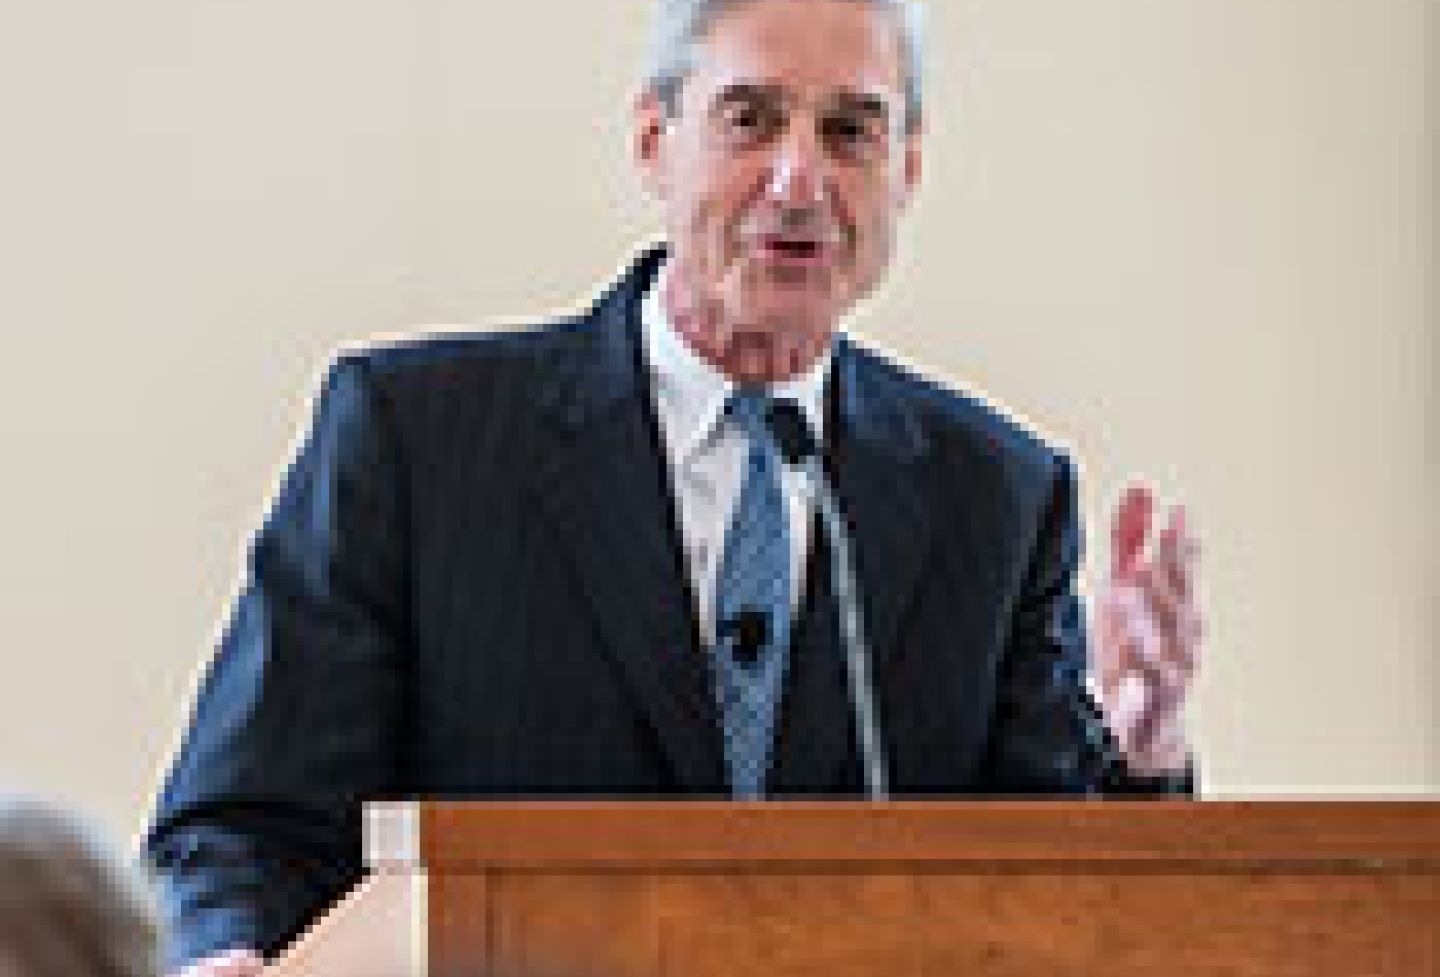 Robert S. Mueller III